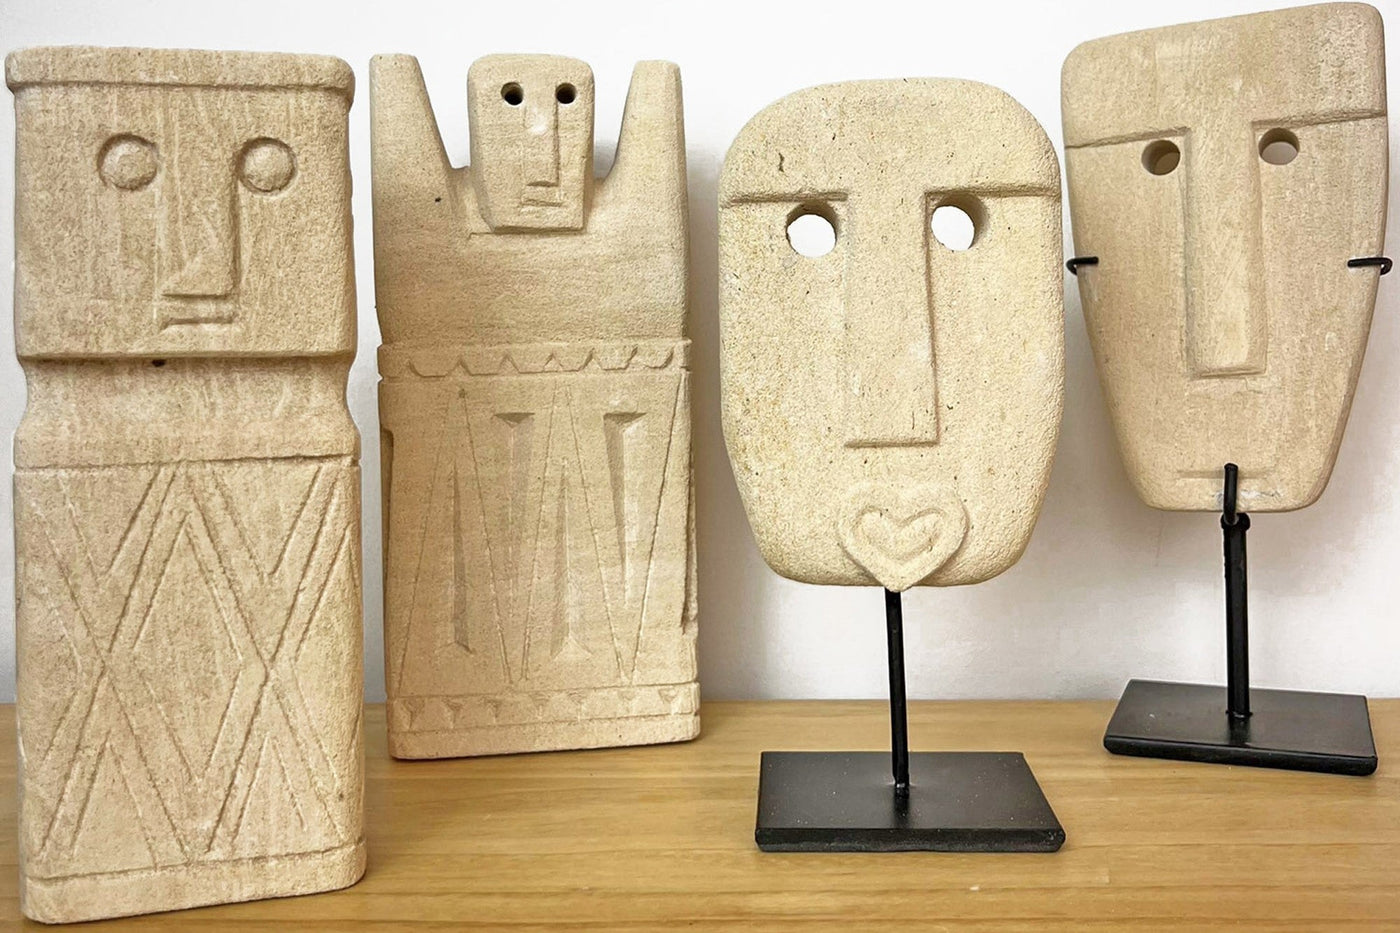 Figuras decorativas pequeñas de piedra hechas a mano con un estilo étnico y rústico moderno